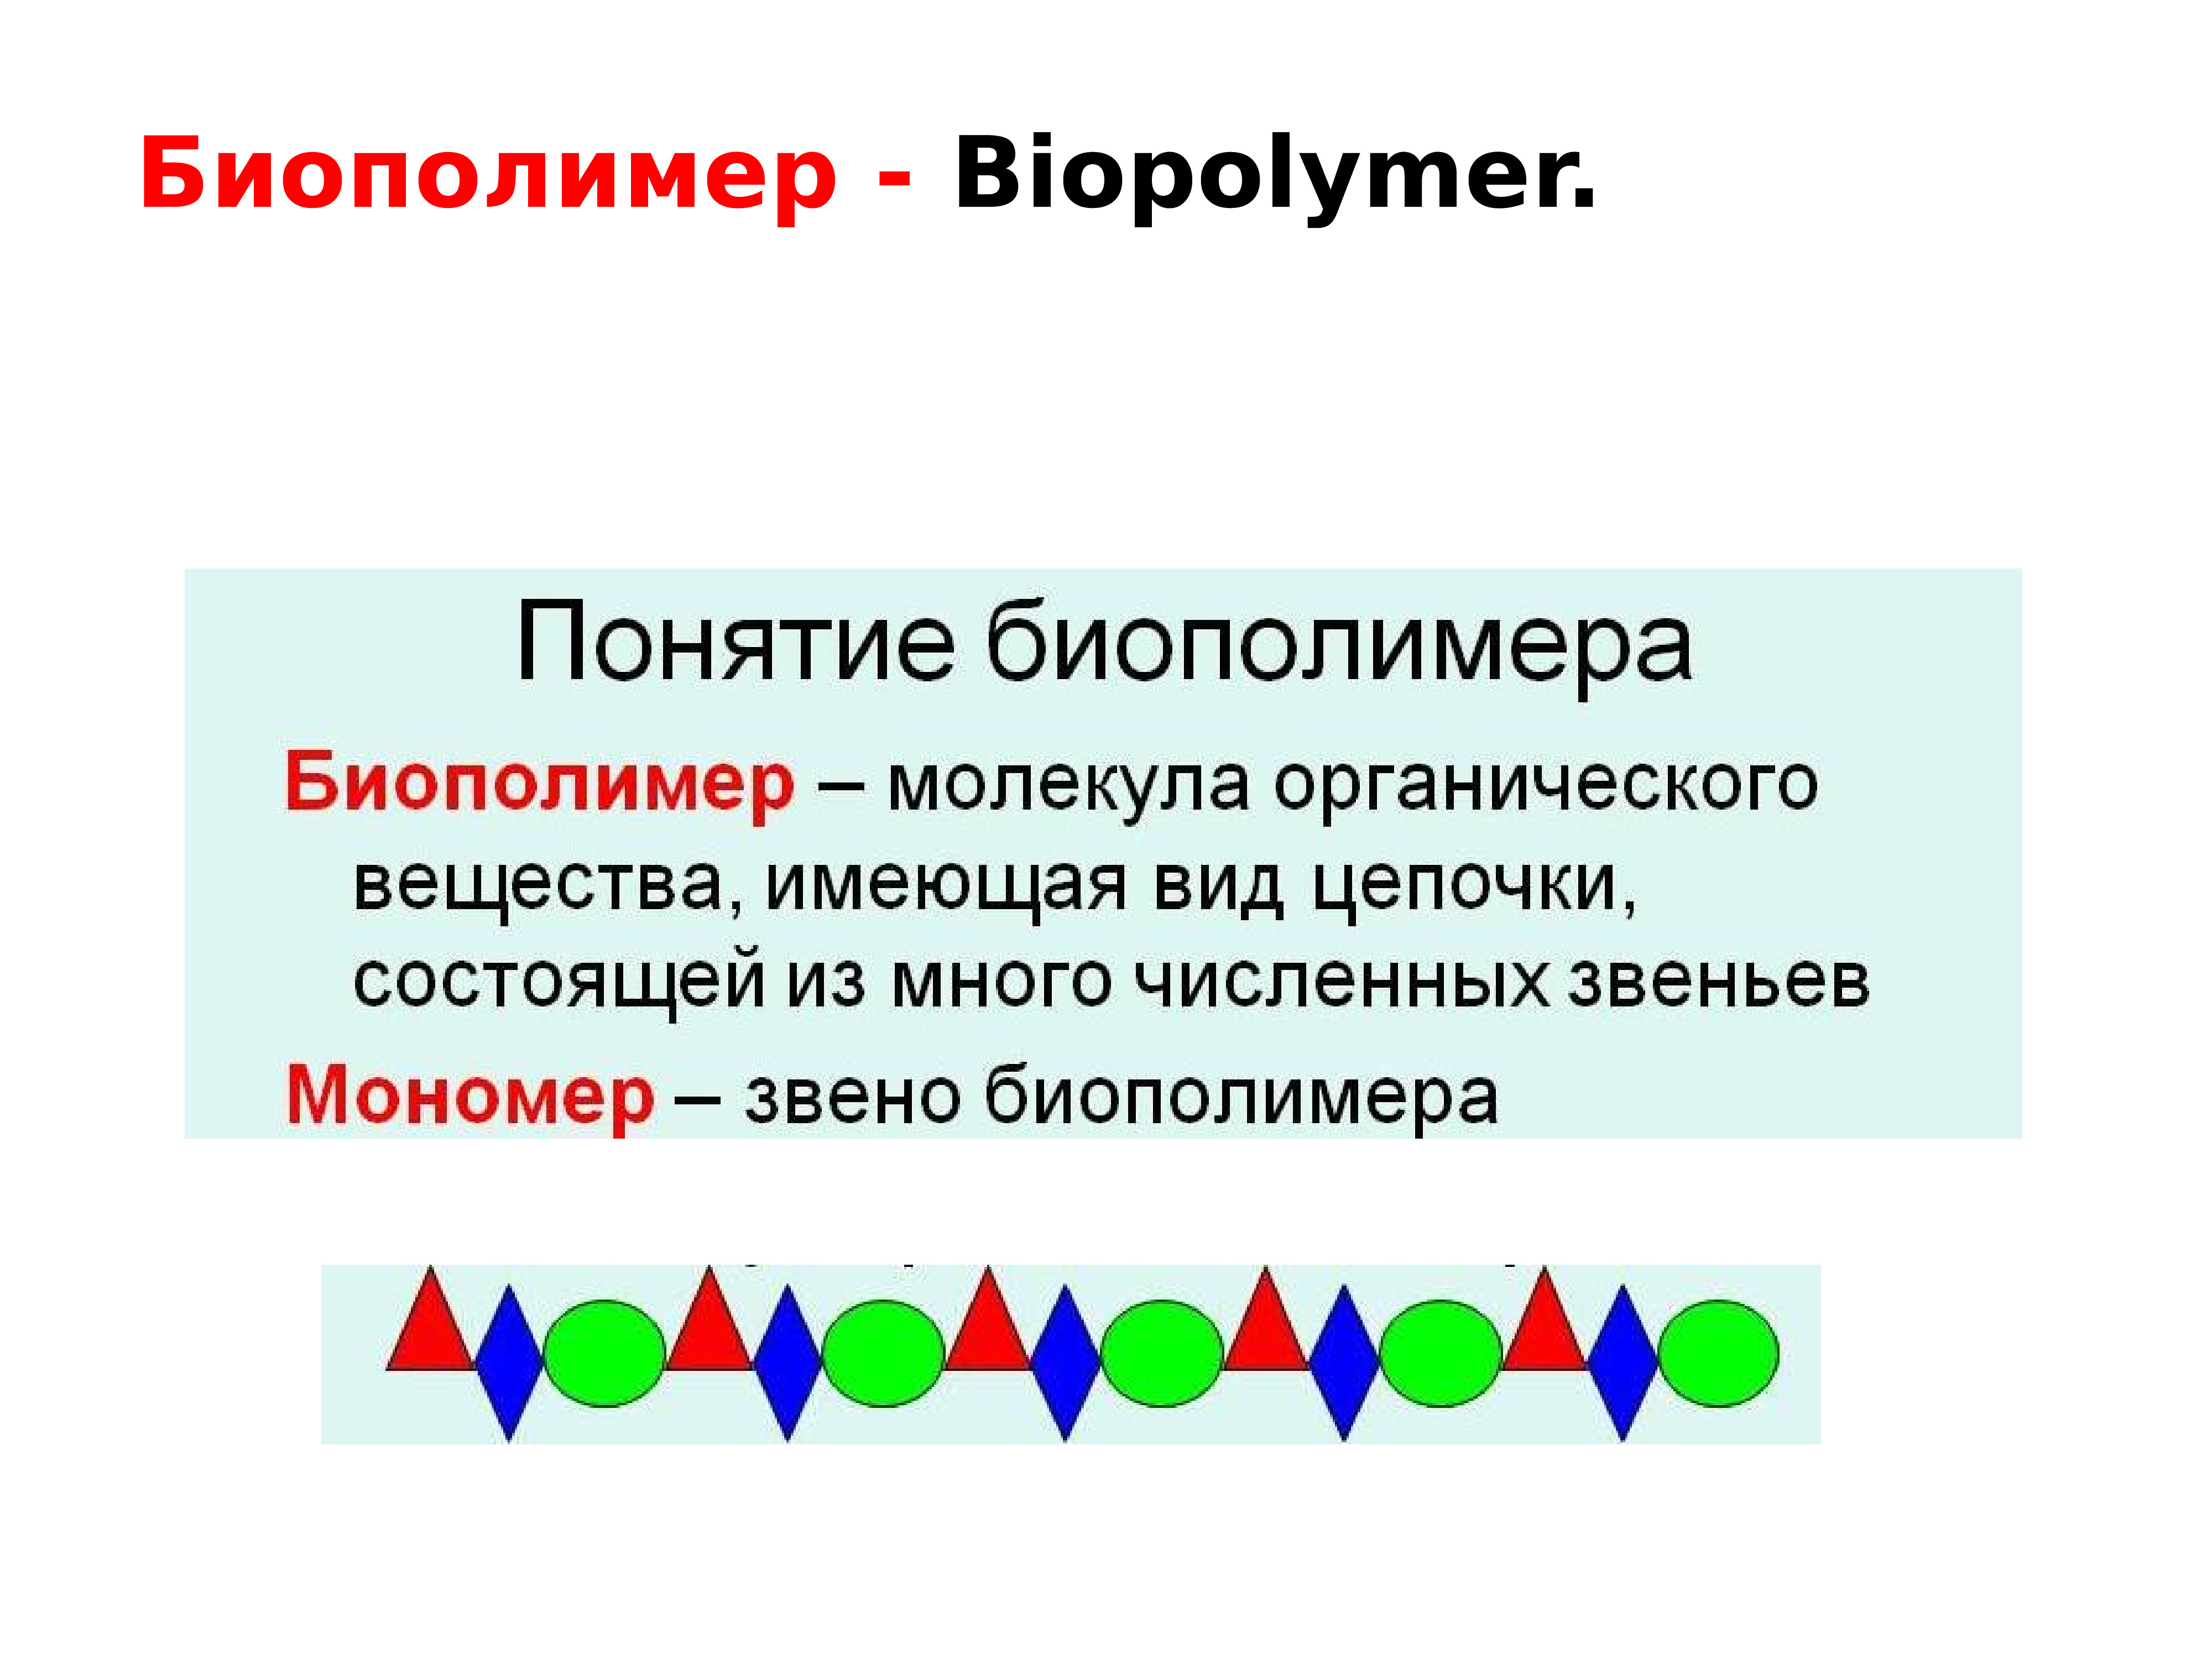 Характеристики биополимеров